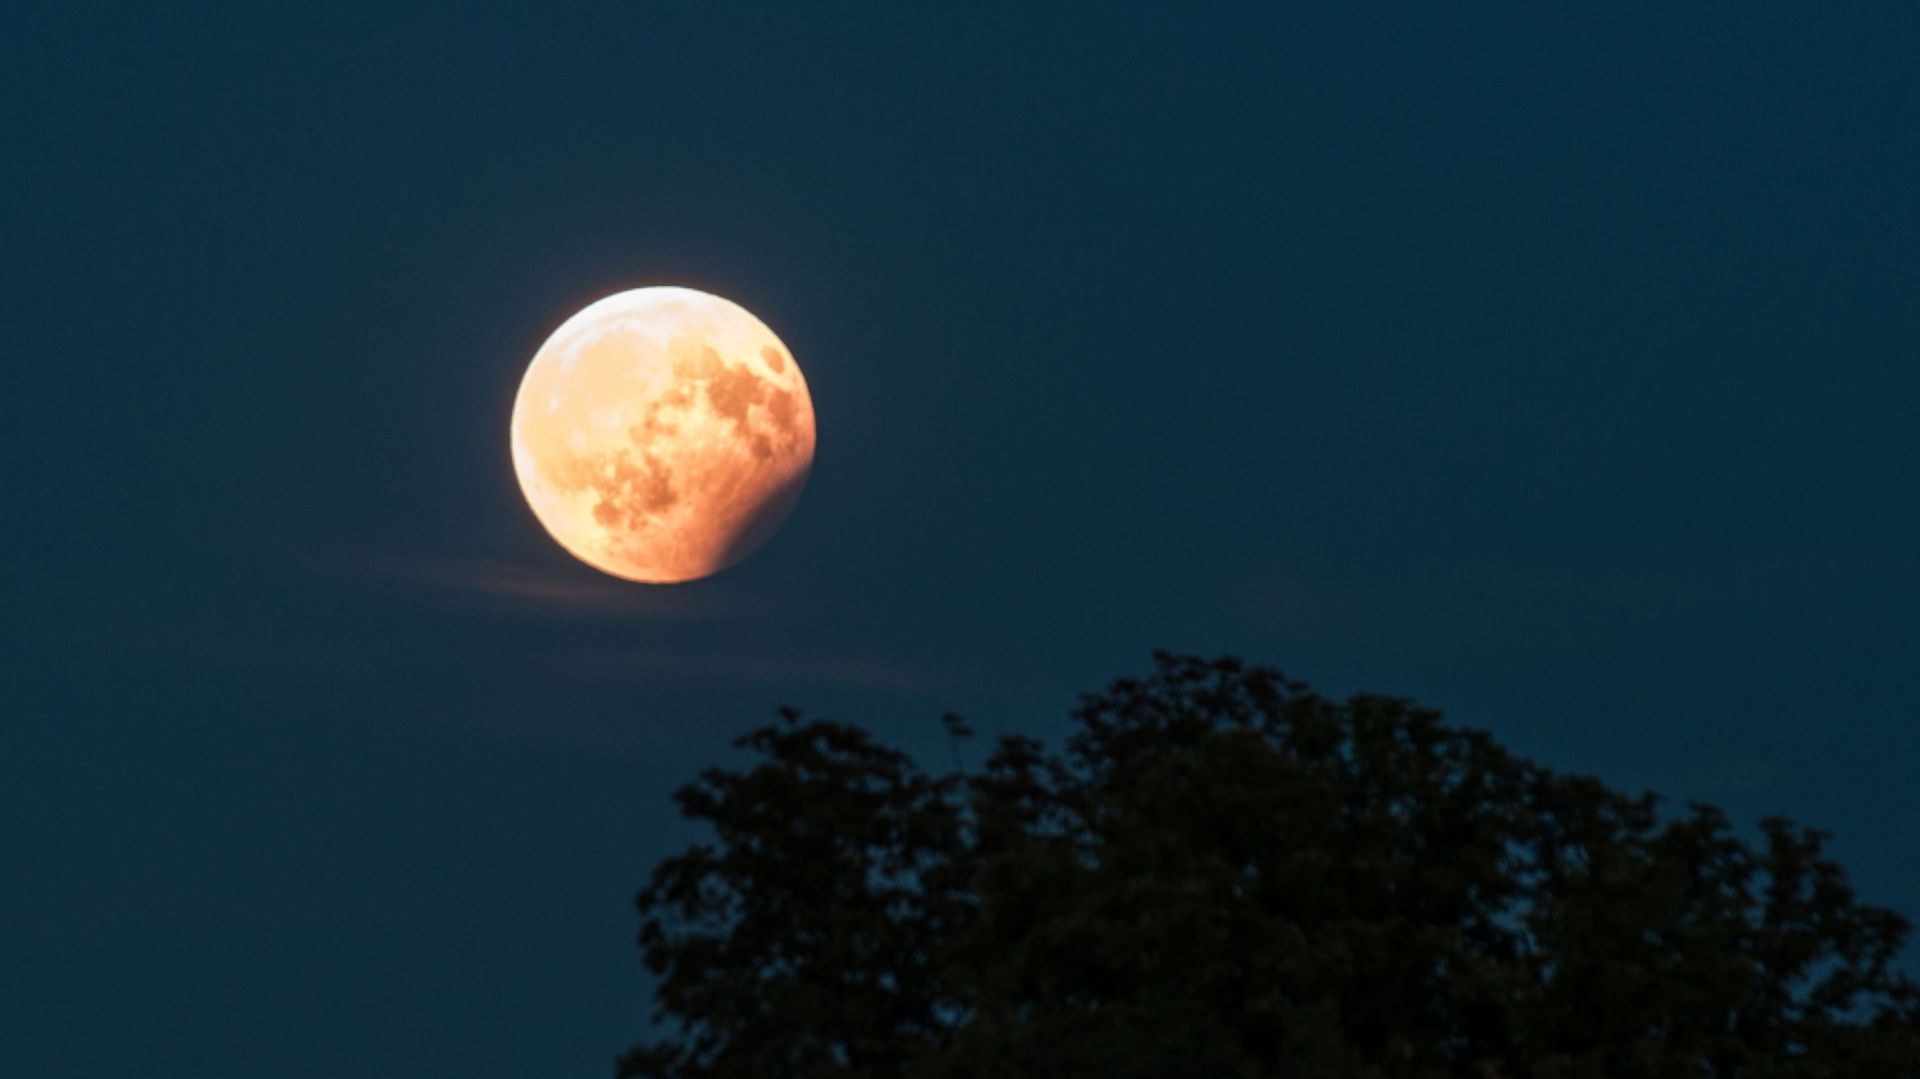 Eclipse de lune partielle, 7 août 2017, Regensburg, Allemagne